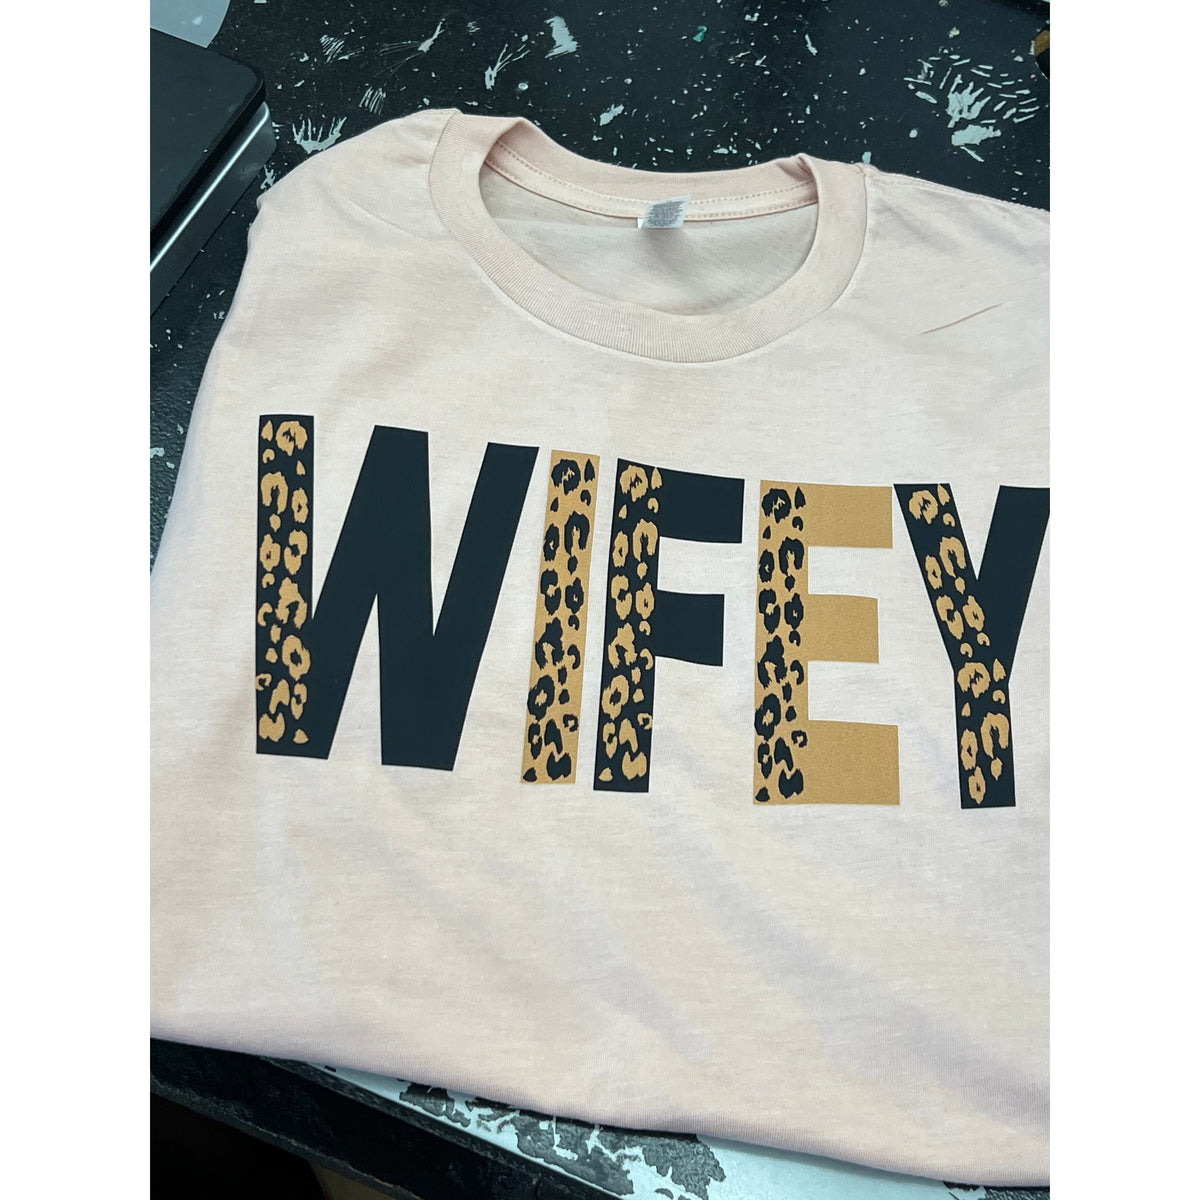 Wife/Mana or aunt leopard tee or sweatshirt